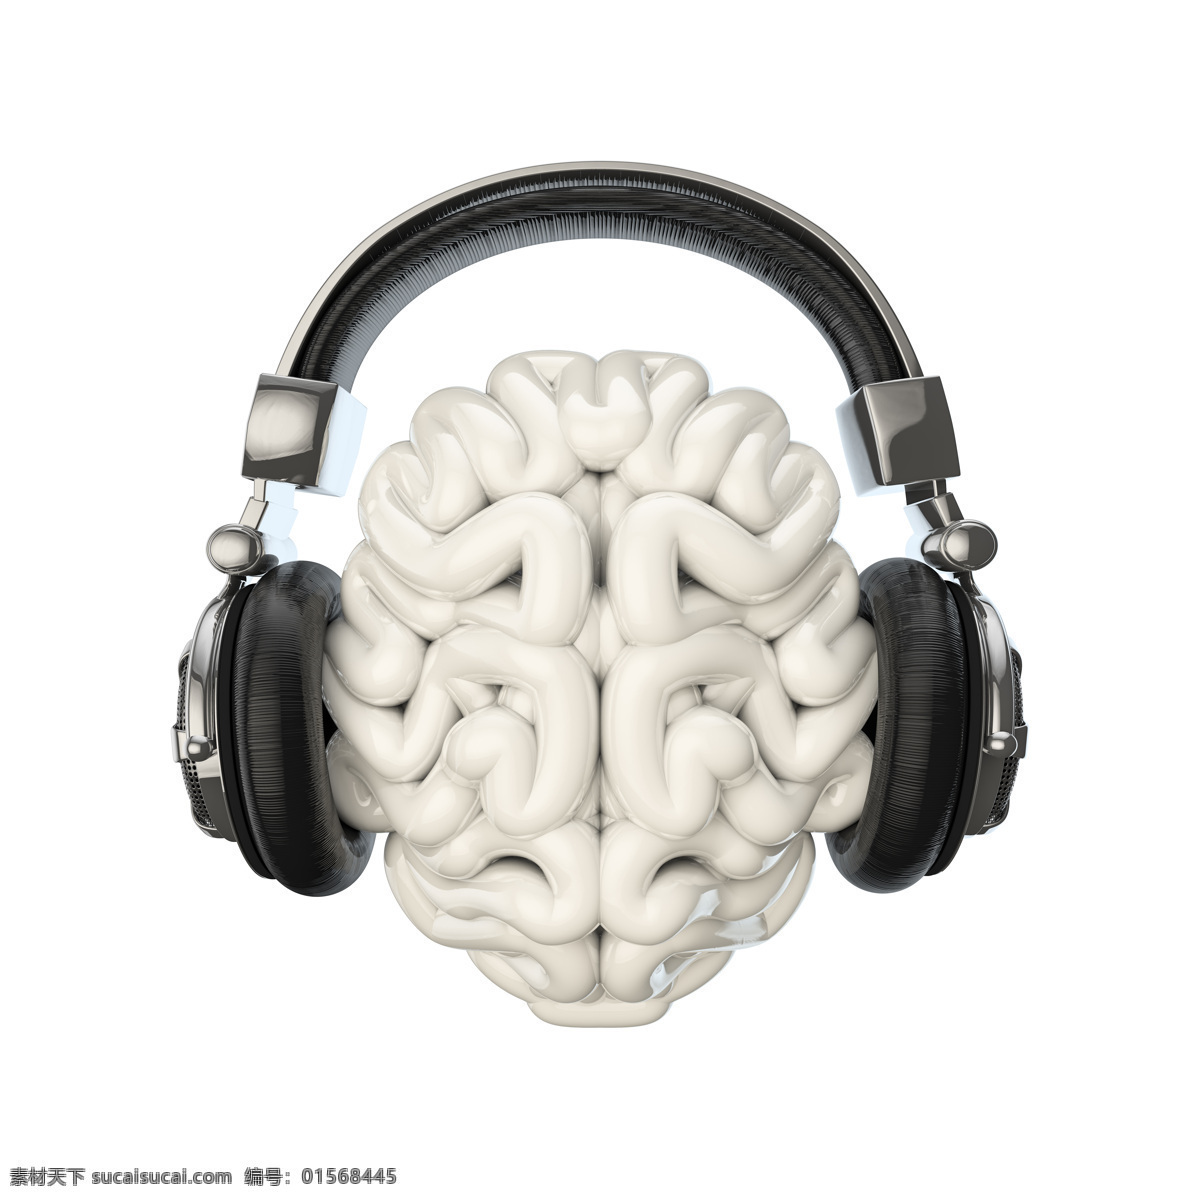 戴耳机的大脑 耳机 大脑 耳麦 创意 创意图片 其他类别 生活百科 白色